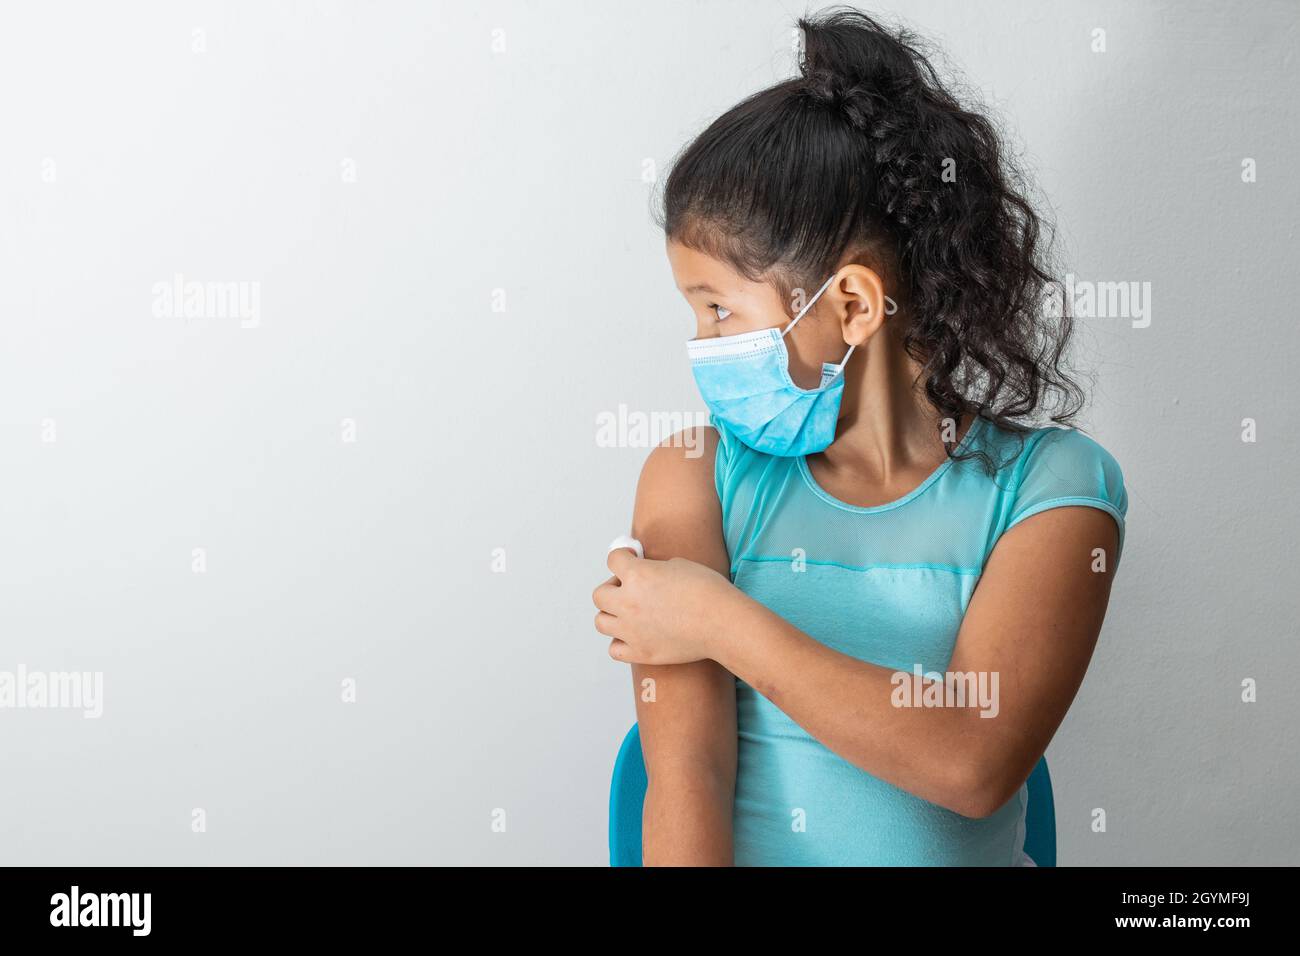 bambina che guarda a destra come lei tiene una palla di cotone sul suo braccio dopo aver ferito la pelle o iniettato il vaccino covid-19. Pronto soccorso. Medico, phar Foto Stock